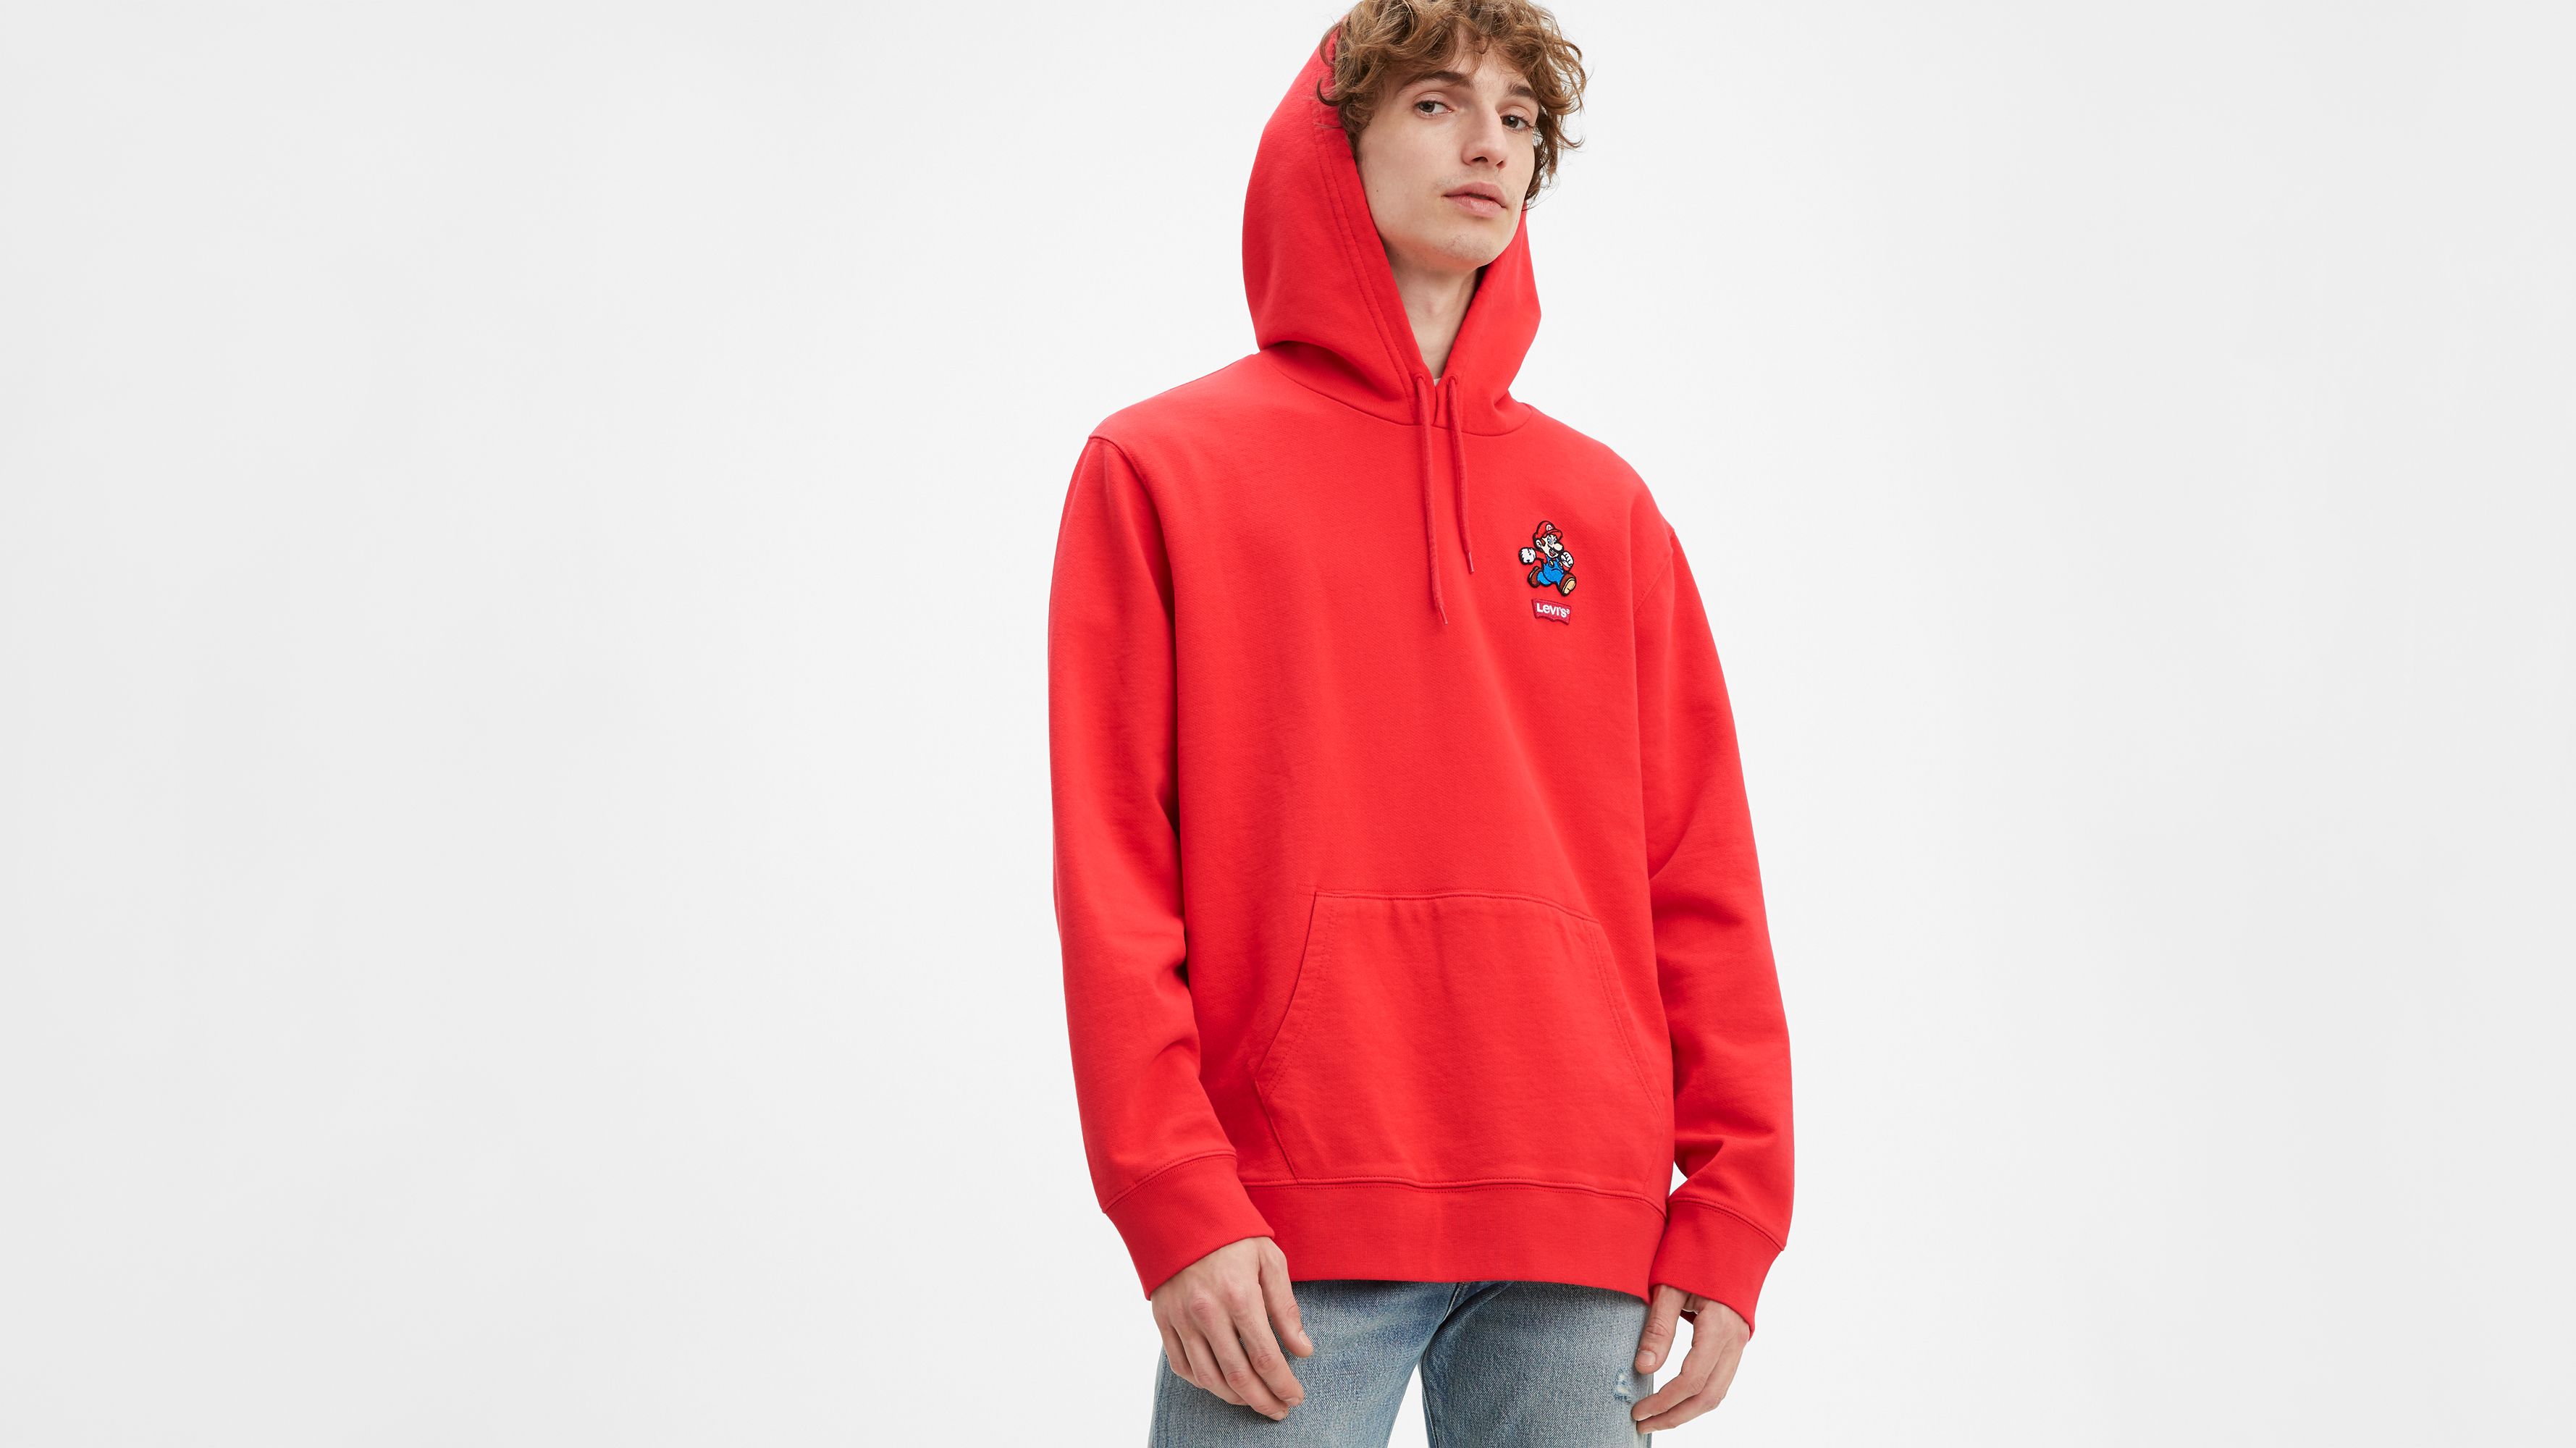 levis red hoodie